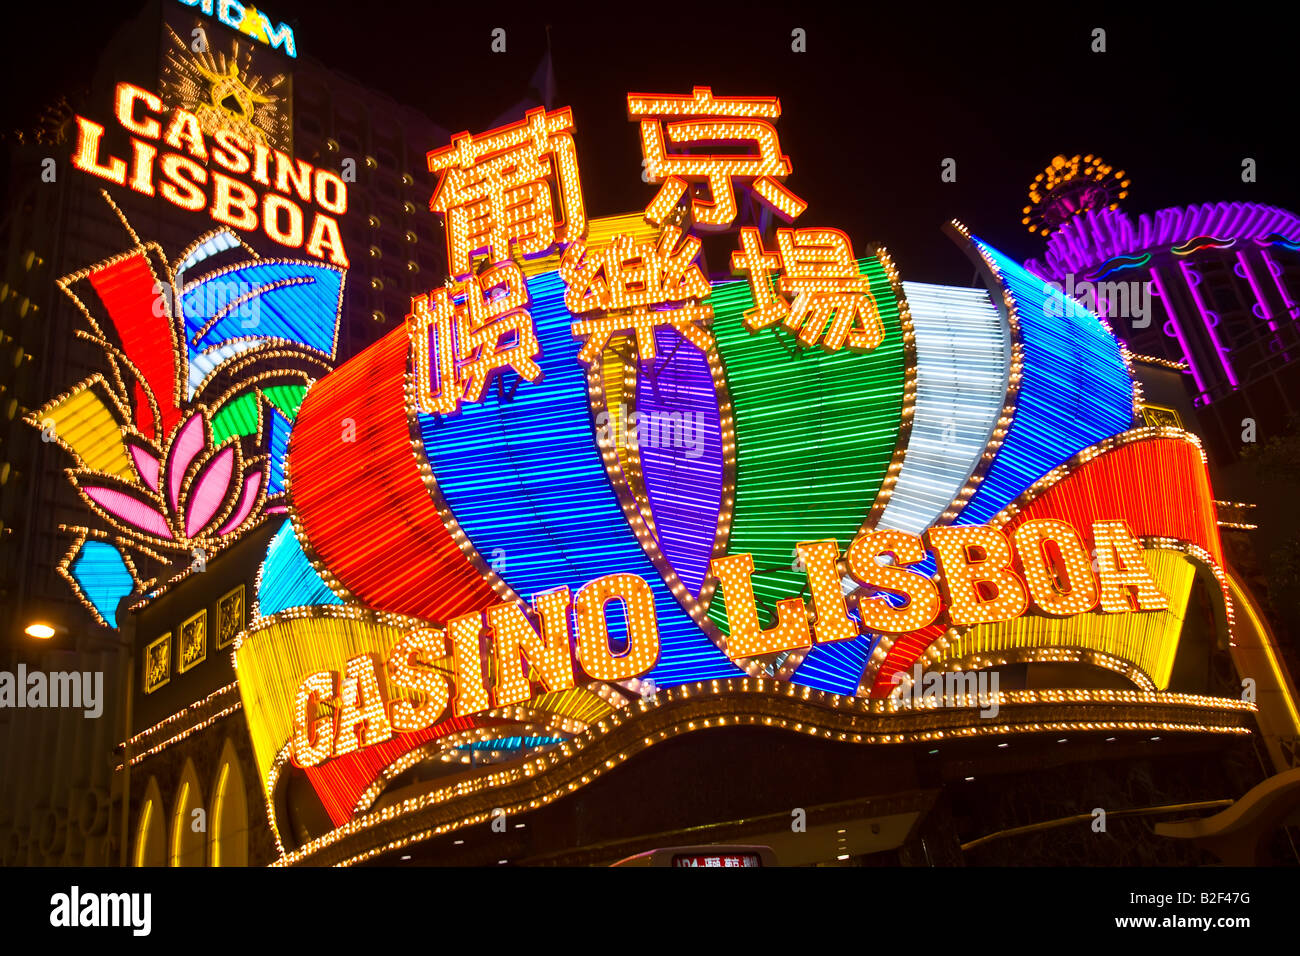 La CHINE MACAO Casino Lisboa de néons et signes de nuit Macao est la seule région de Chine où le jeu est autorisé Banque D'Images